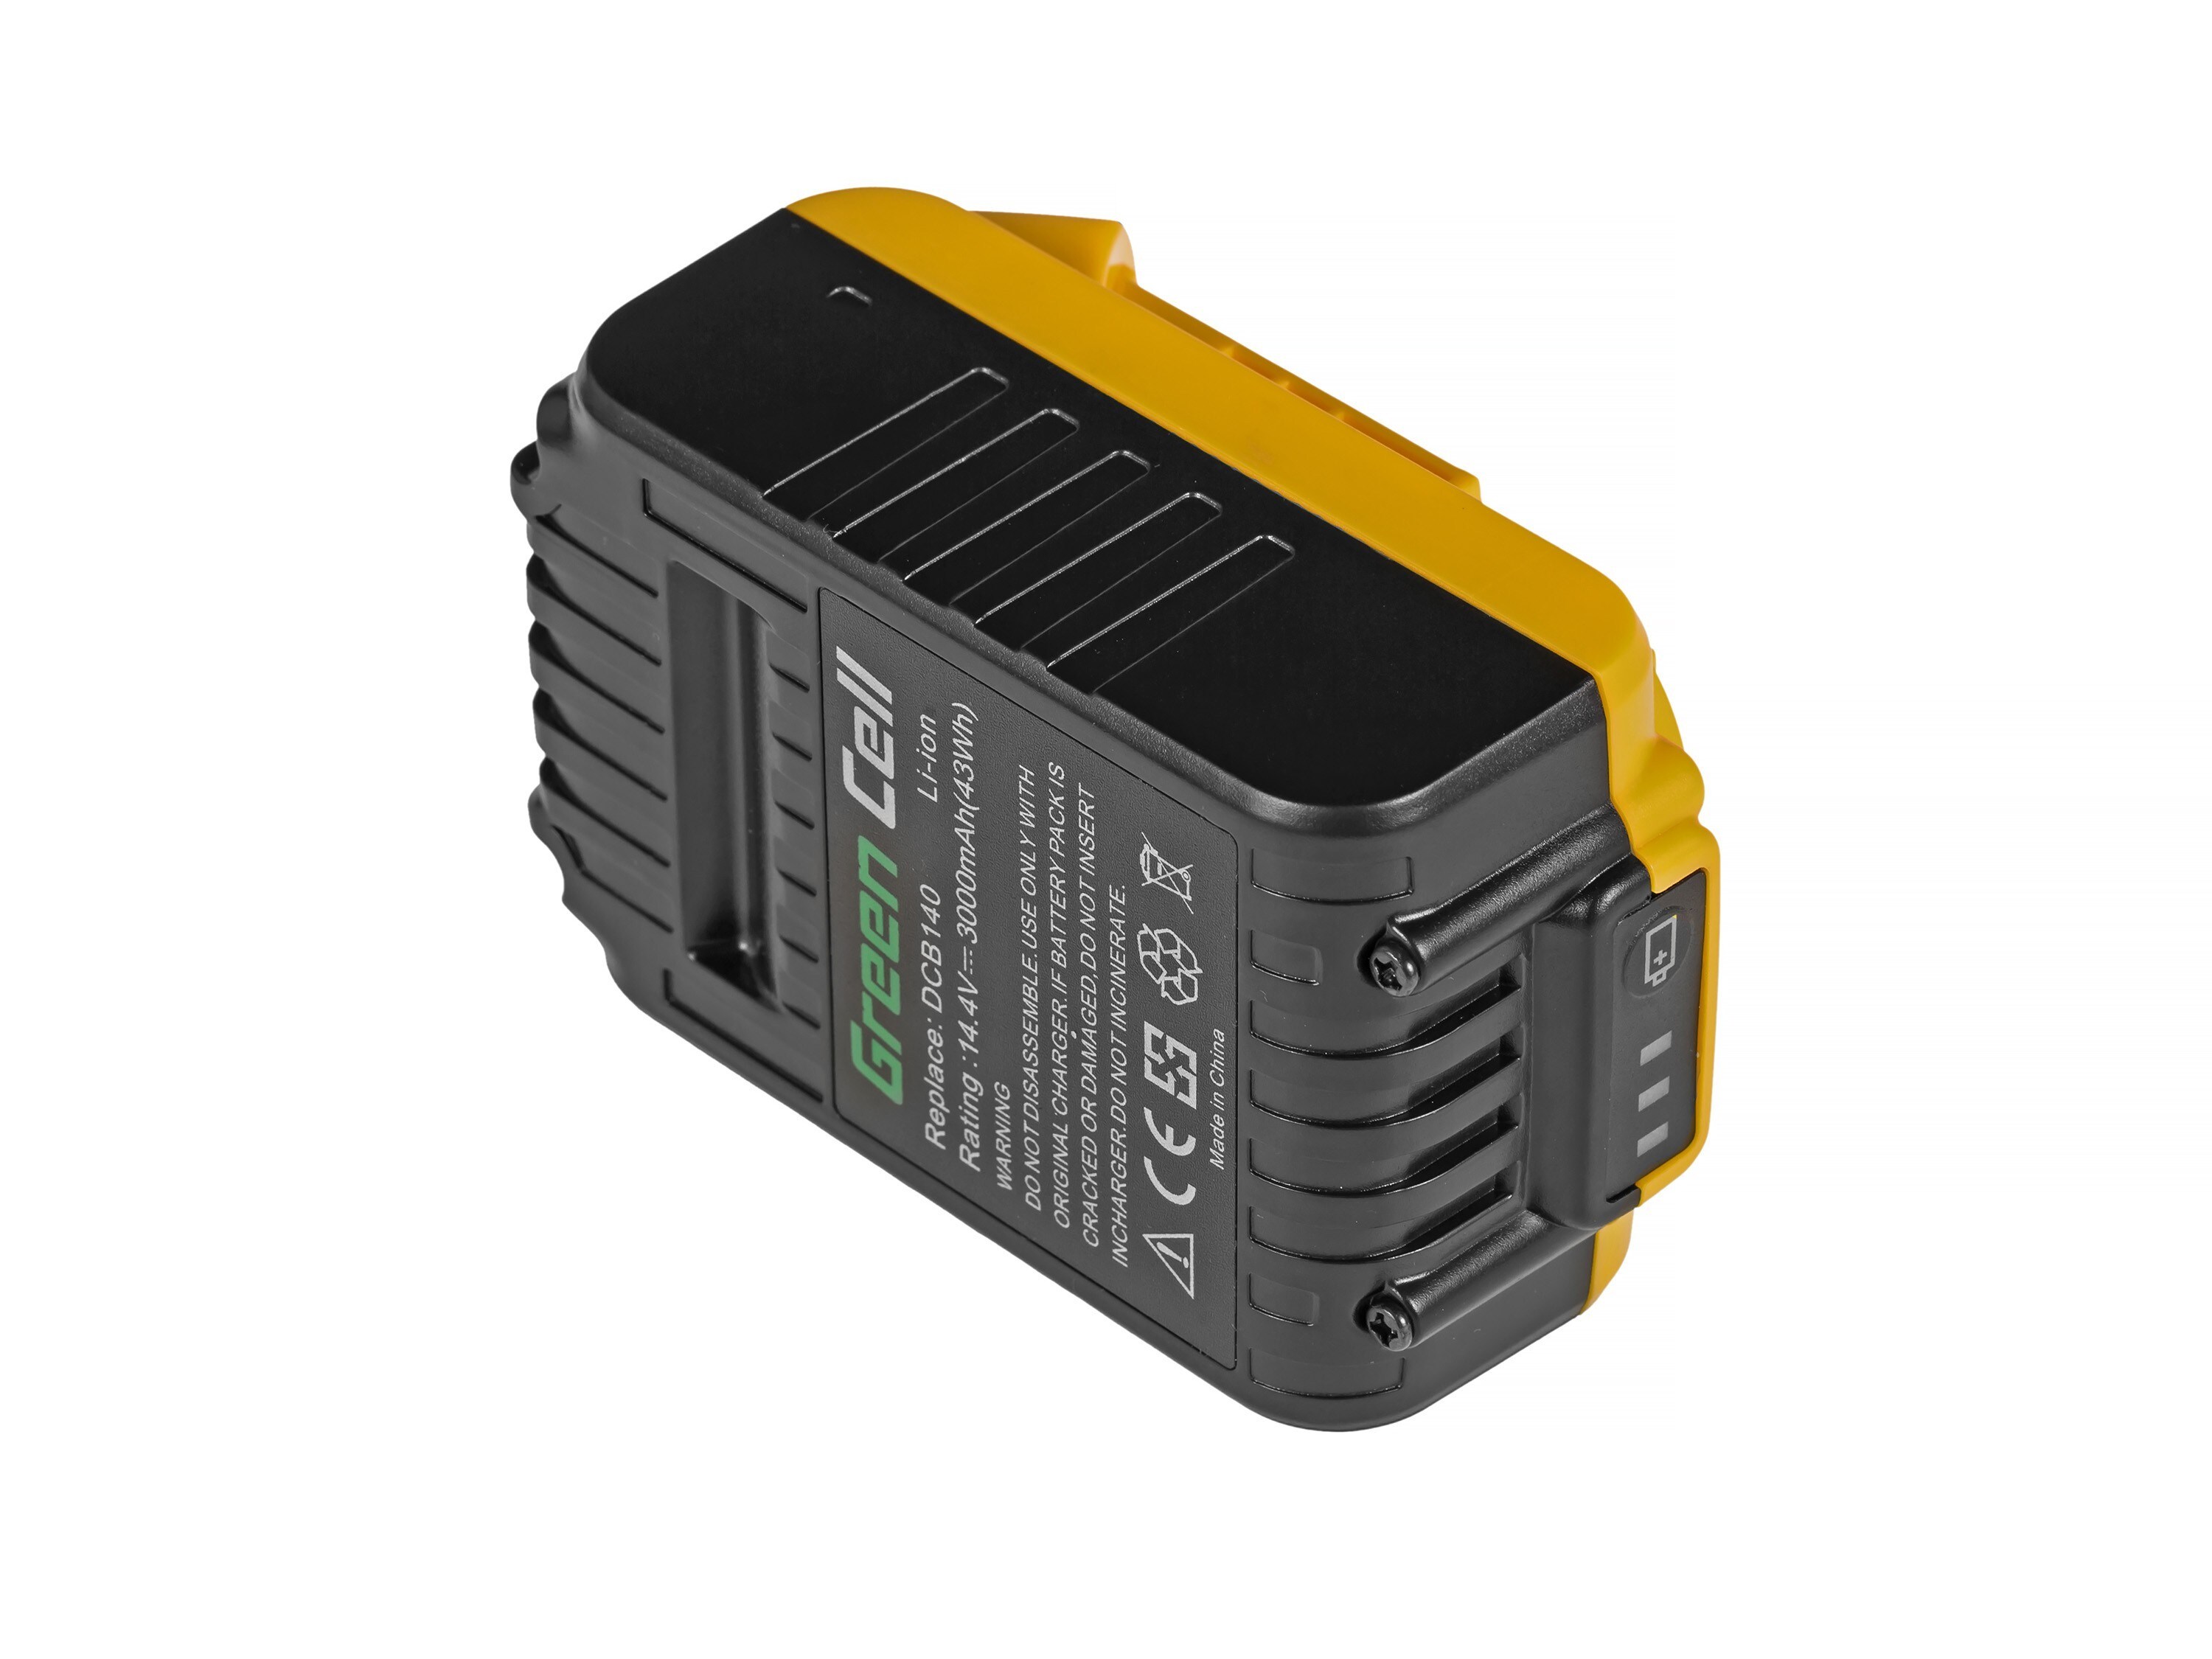 Green Cell verktygsbatteri tillDeWalt DCB140 DCB141 DCB142 14.4V 3Ah